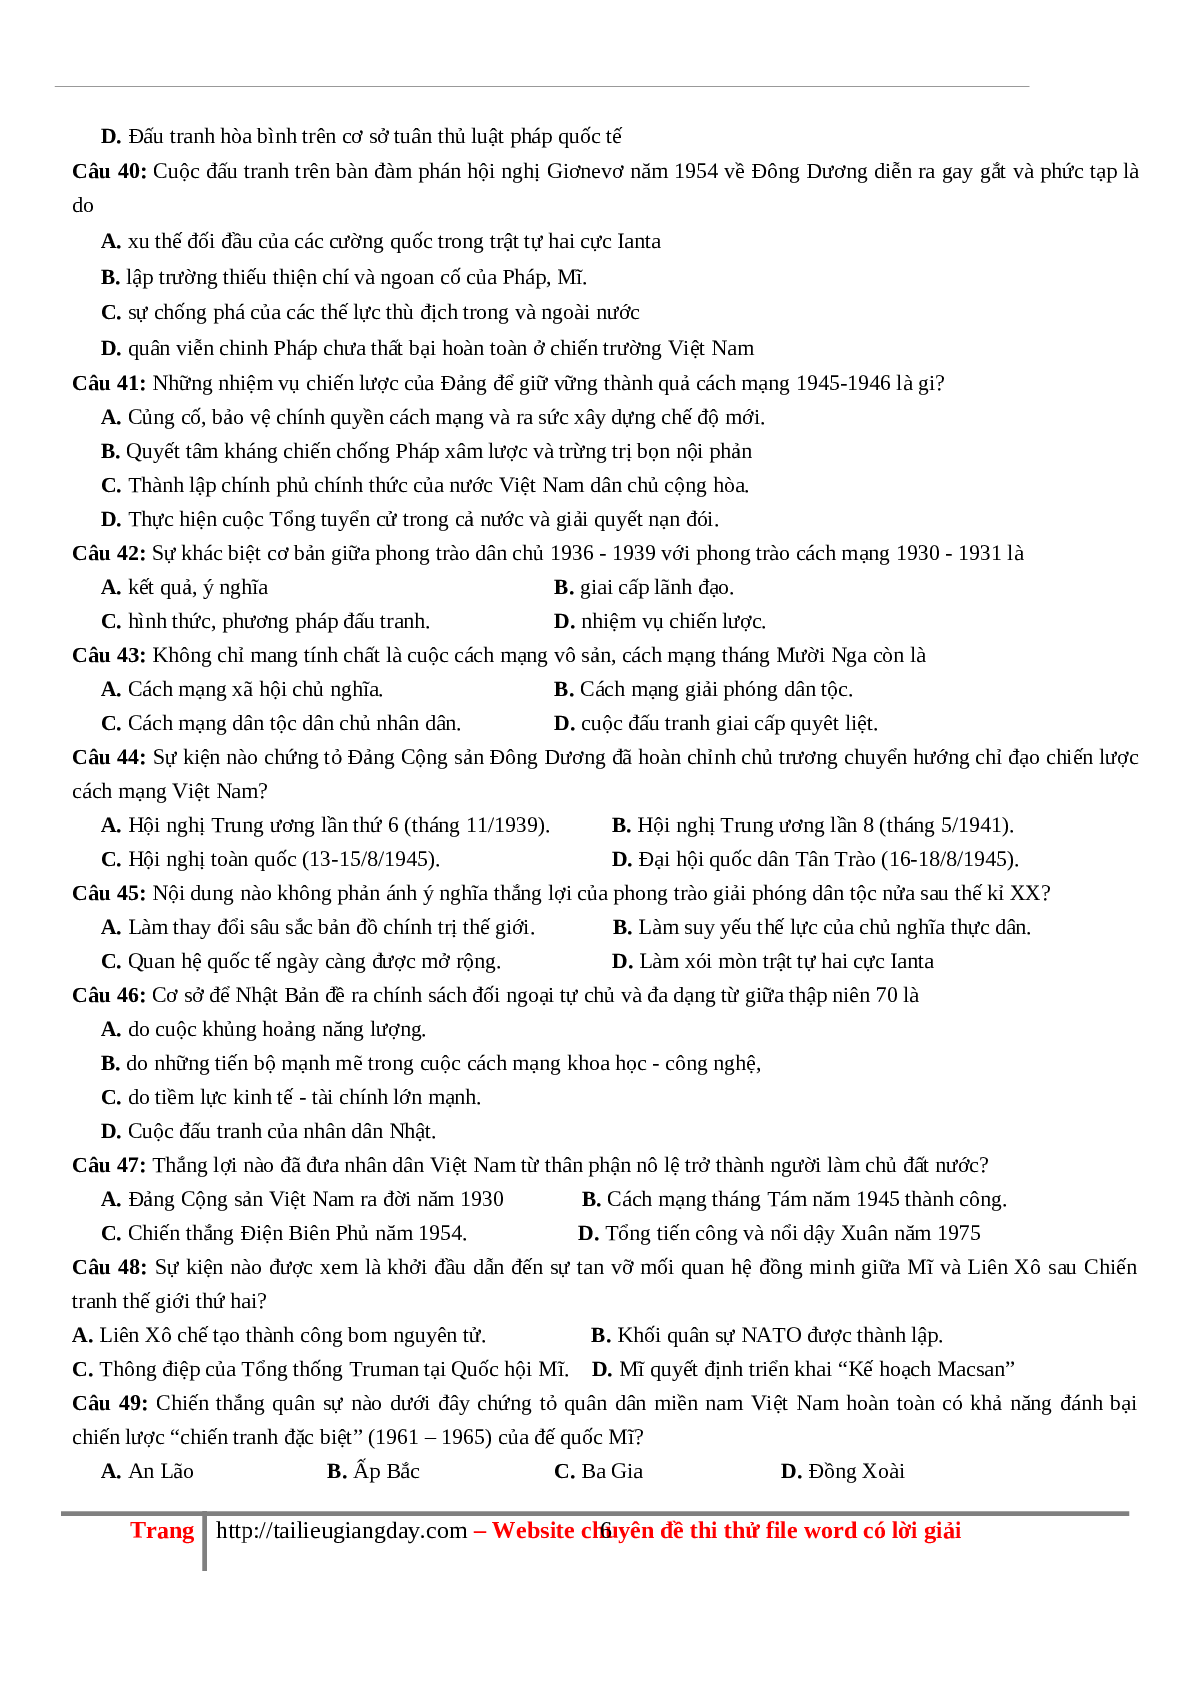 70 câu hỏi ôn tập hay - Lịch Sử 12 (trang 6)